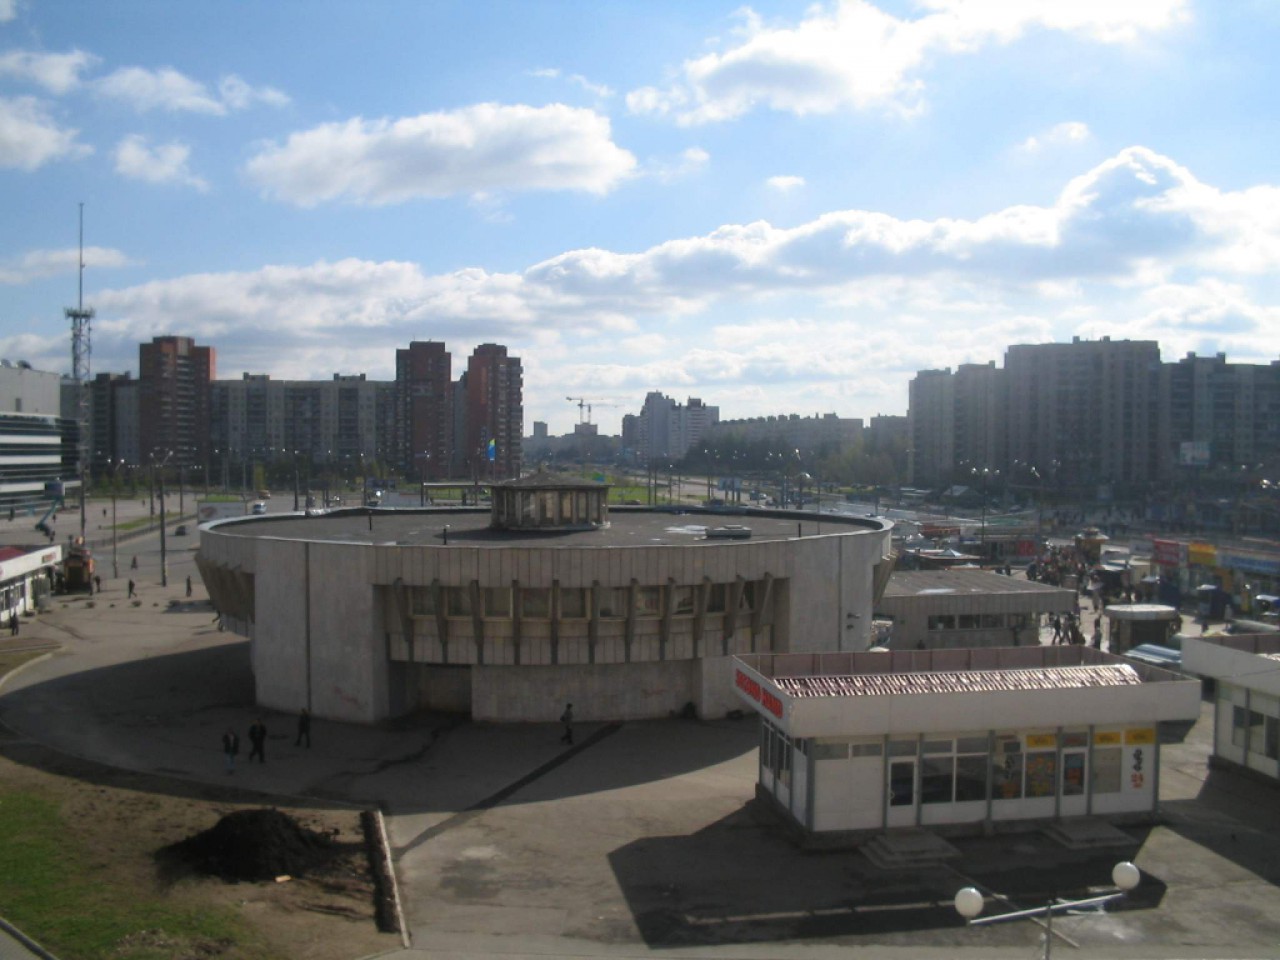 станция метро проспект большевиков санкт петербург